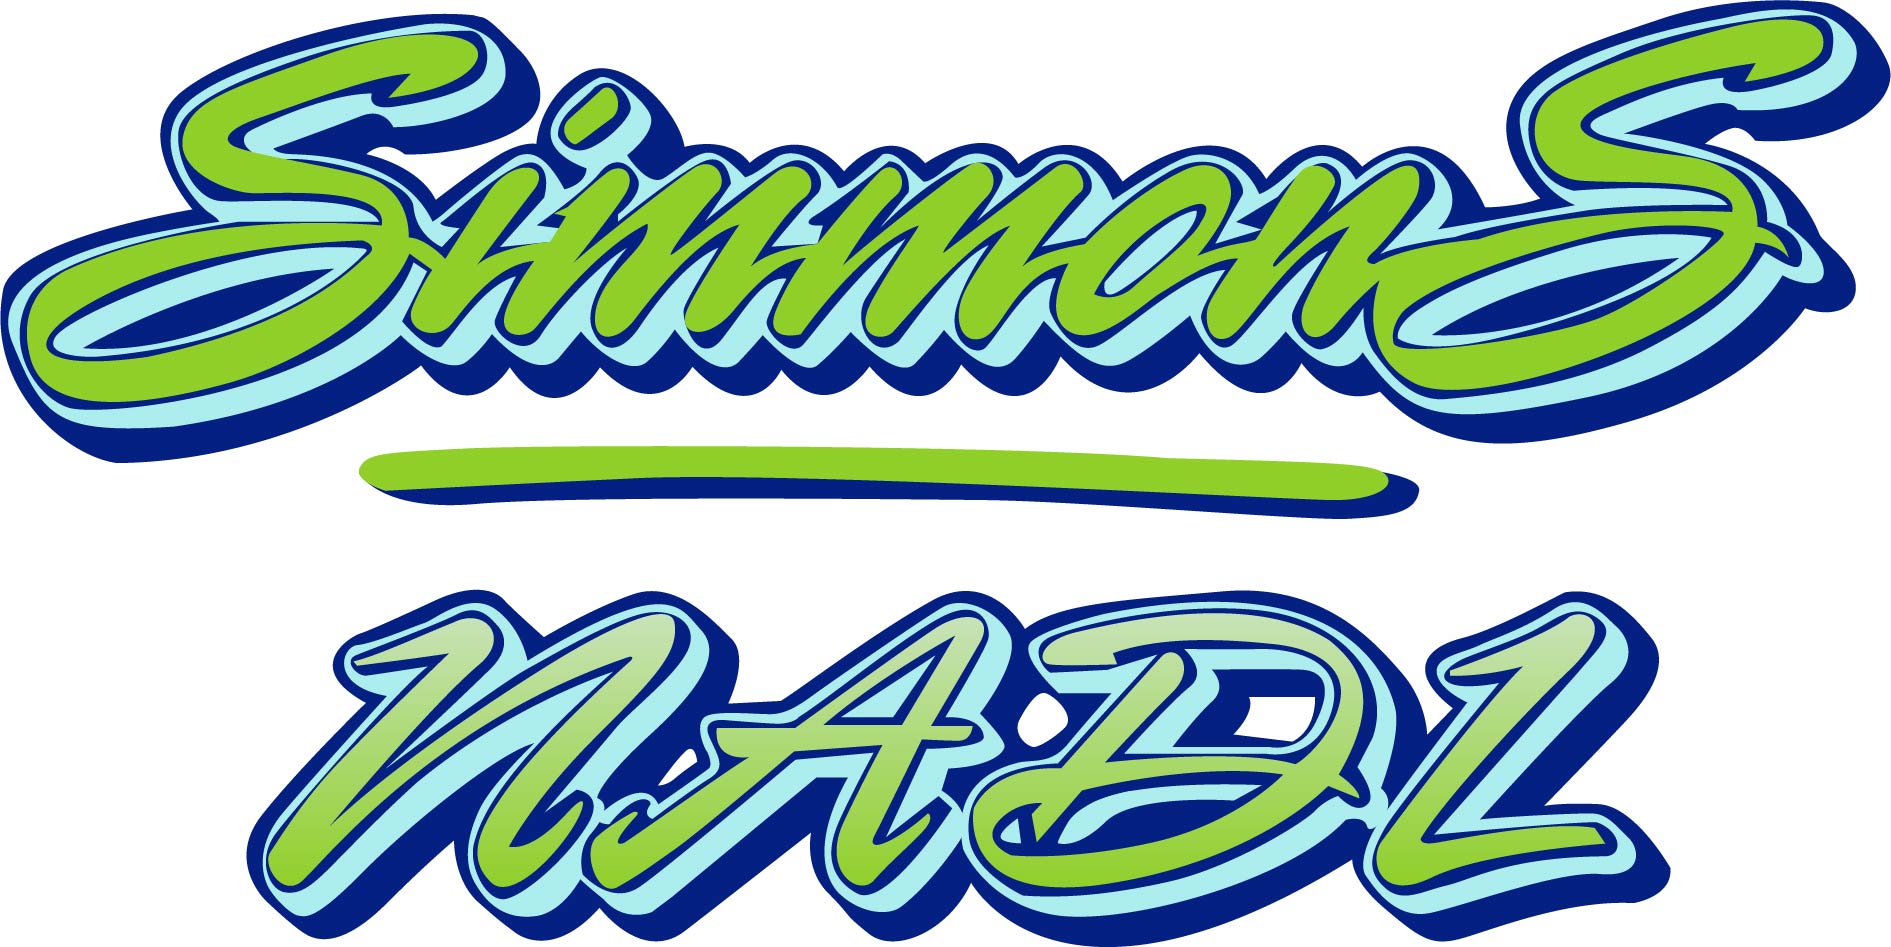 simmons-2 | Simmons Sanitation & Recycling